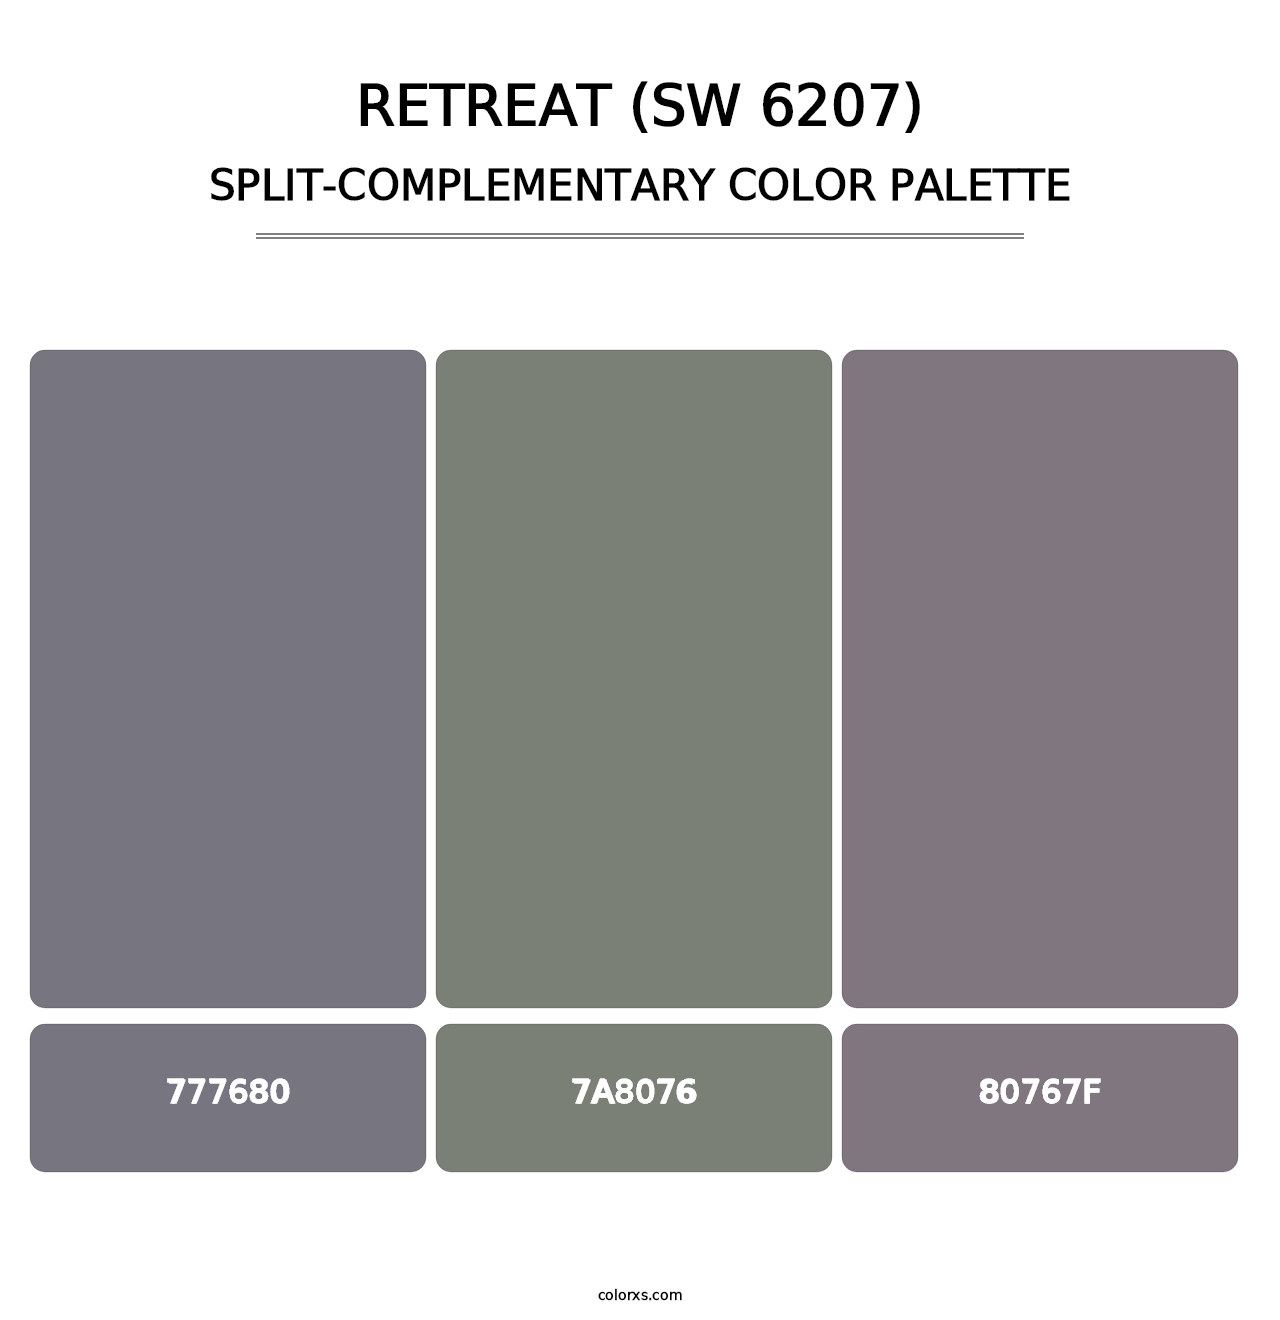 Retreat (SW 6207) - Split-Complementary Color Palette